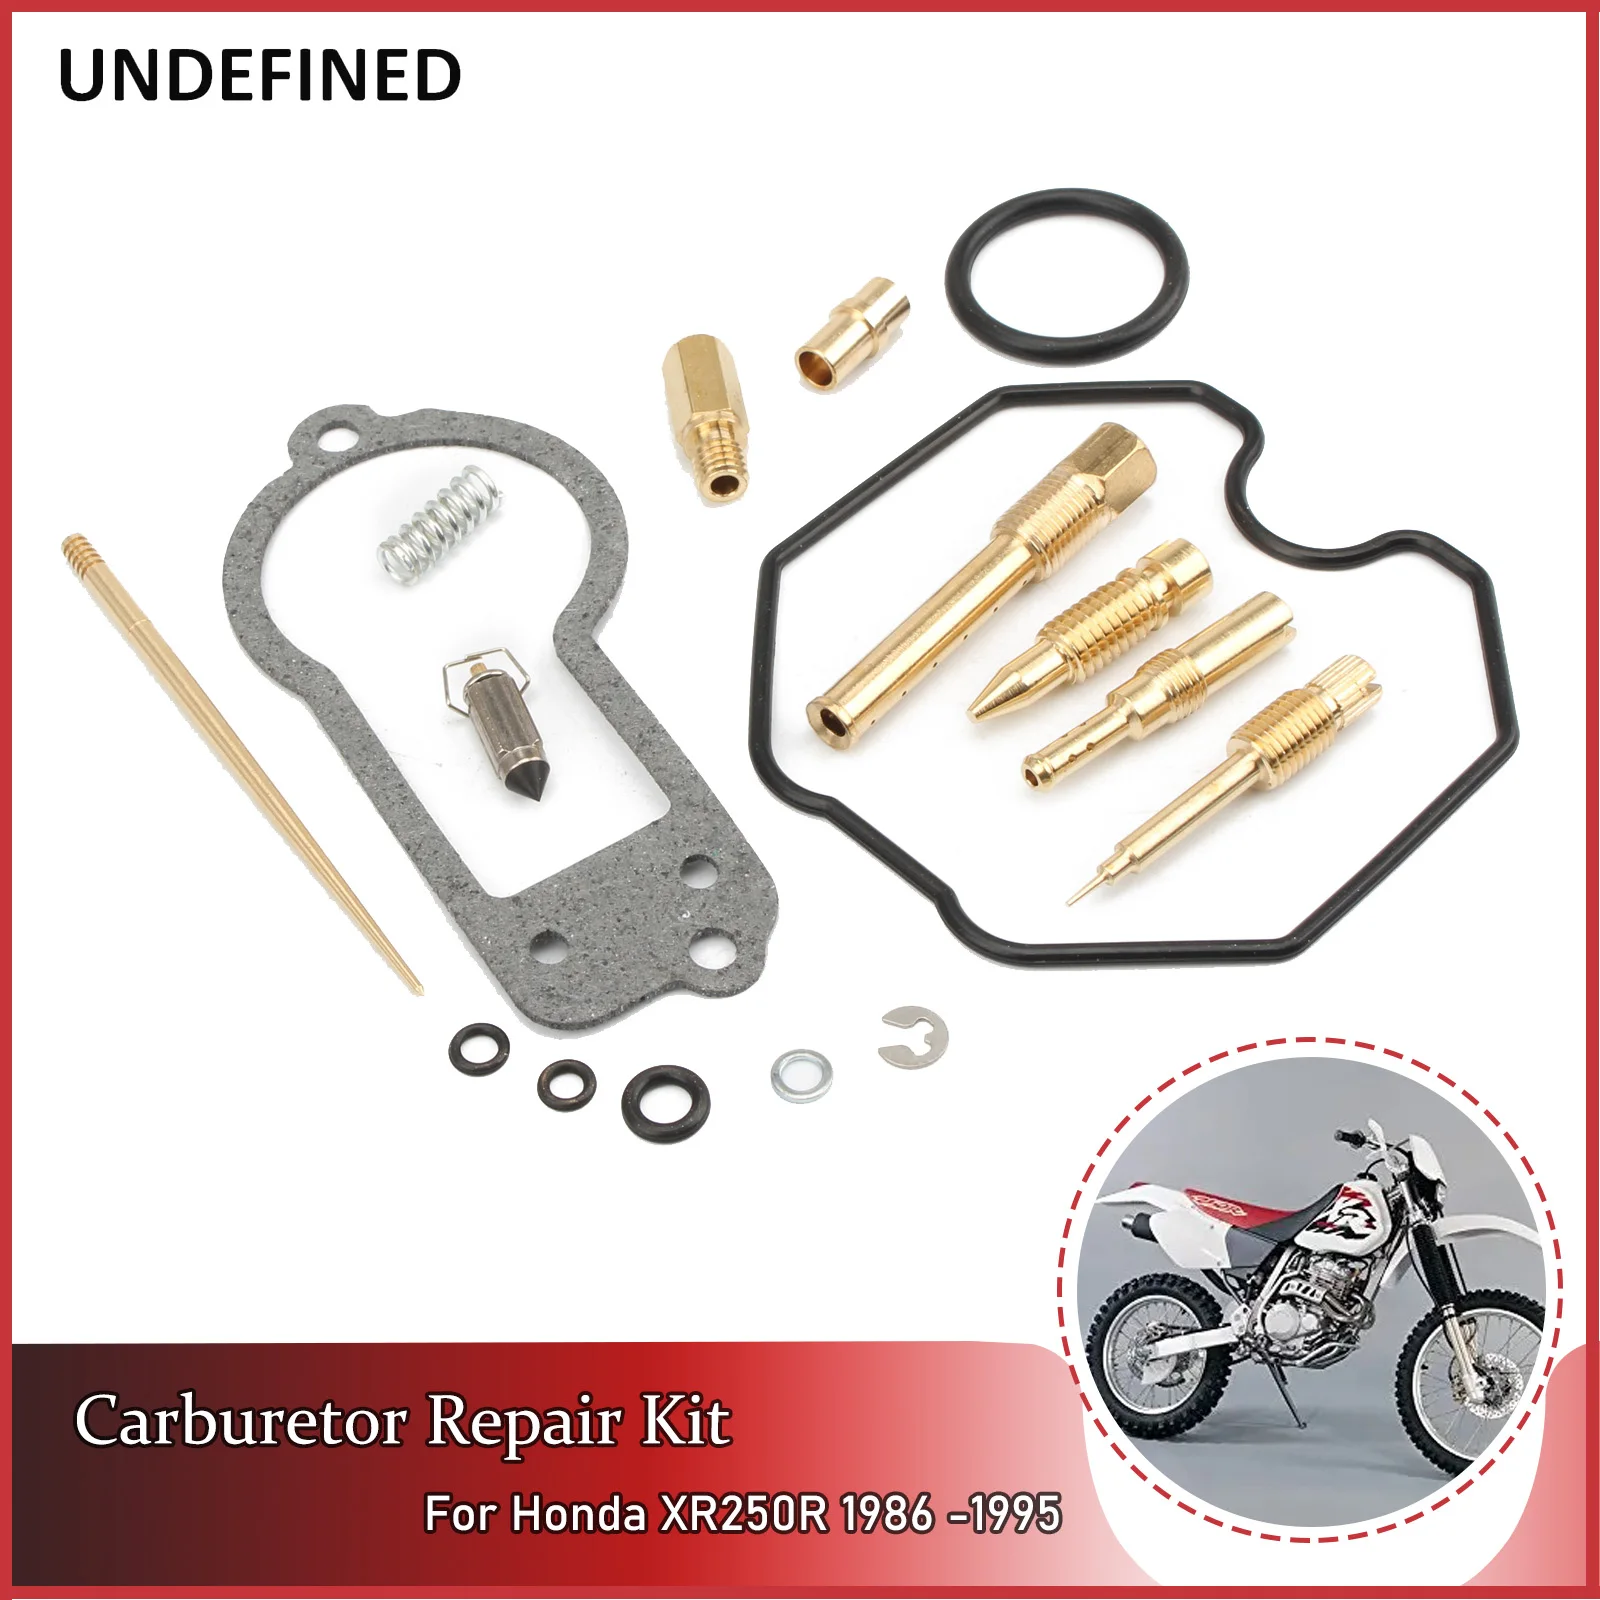 

Carb Rebuild Kit Motorcycle Accessories Carburetor Repair Kit Needle Jet For Honda XR250R XR 250 R 1986-1995